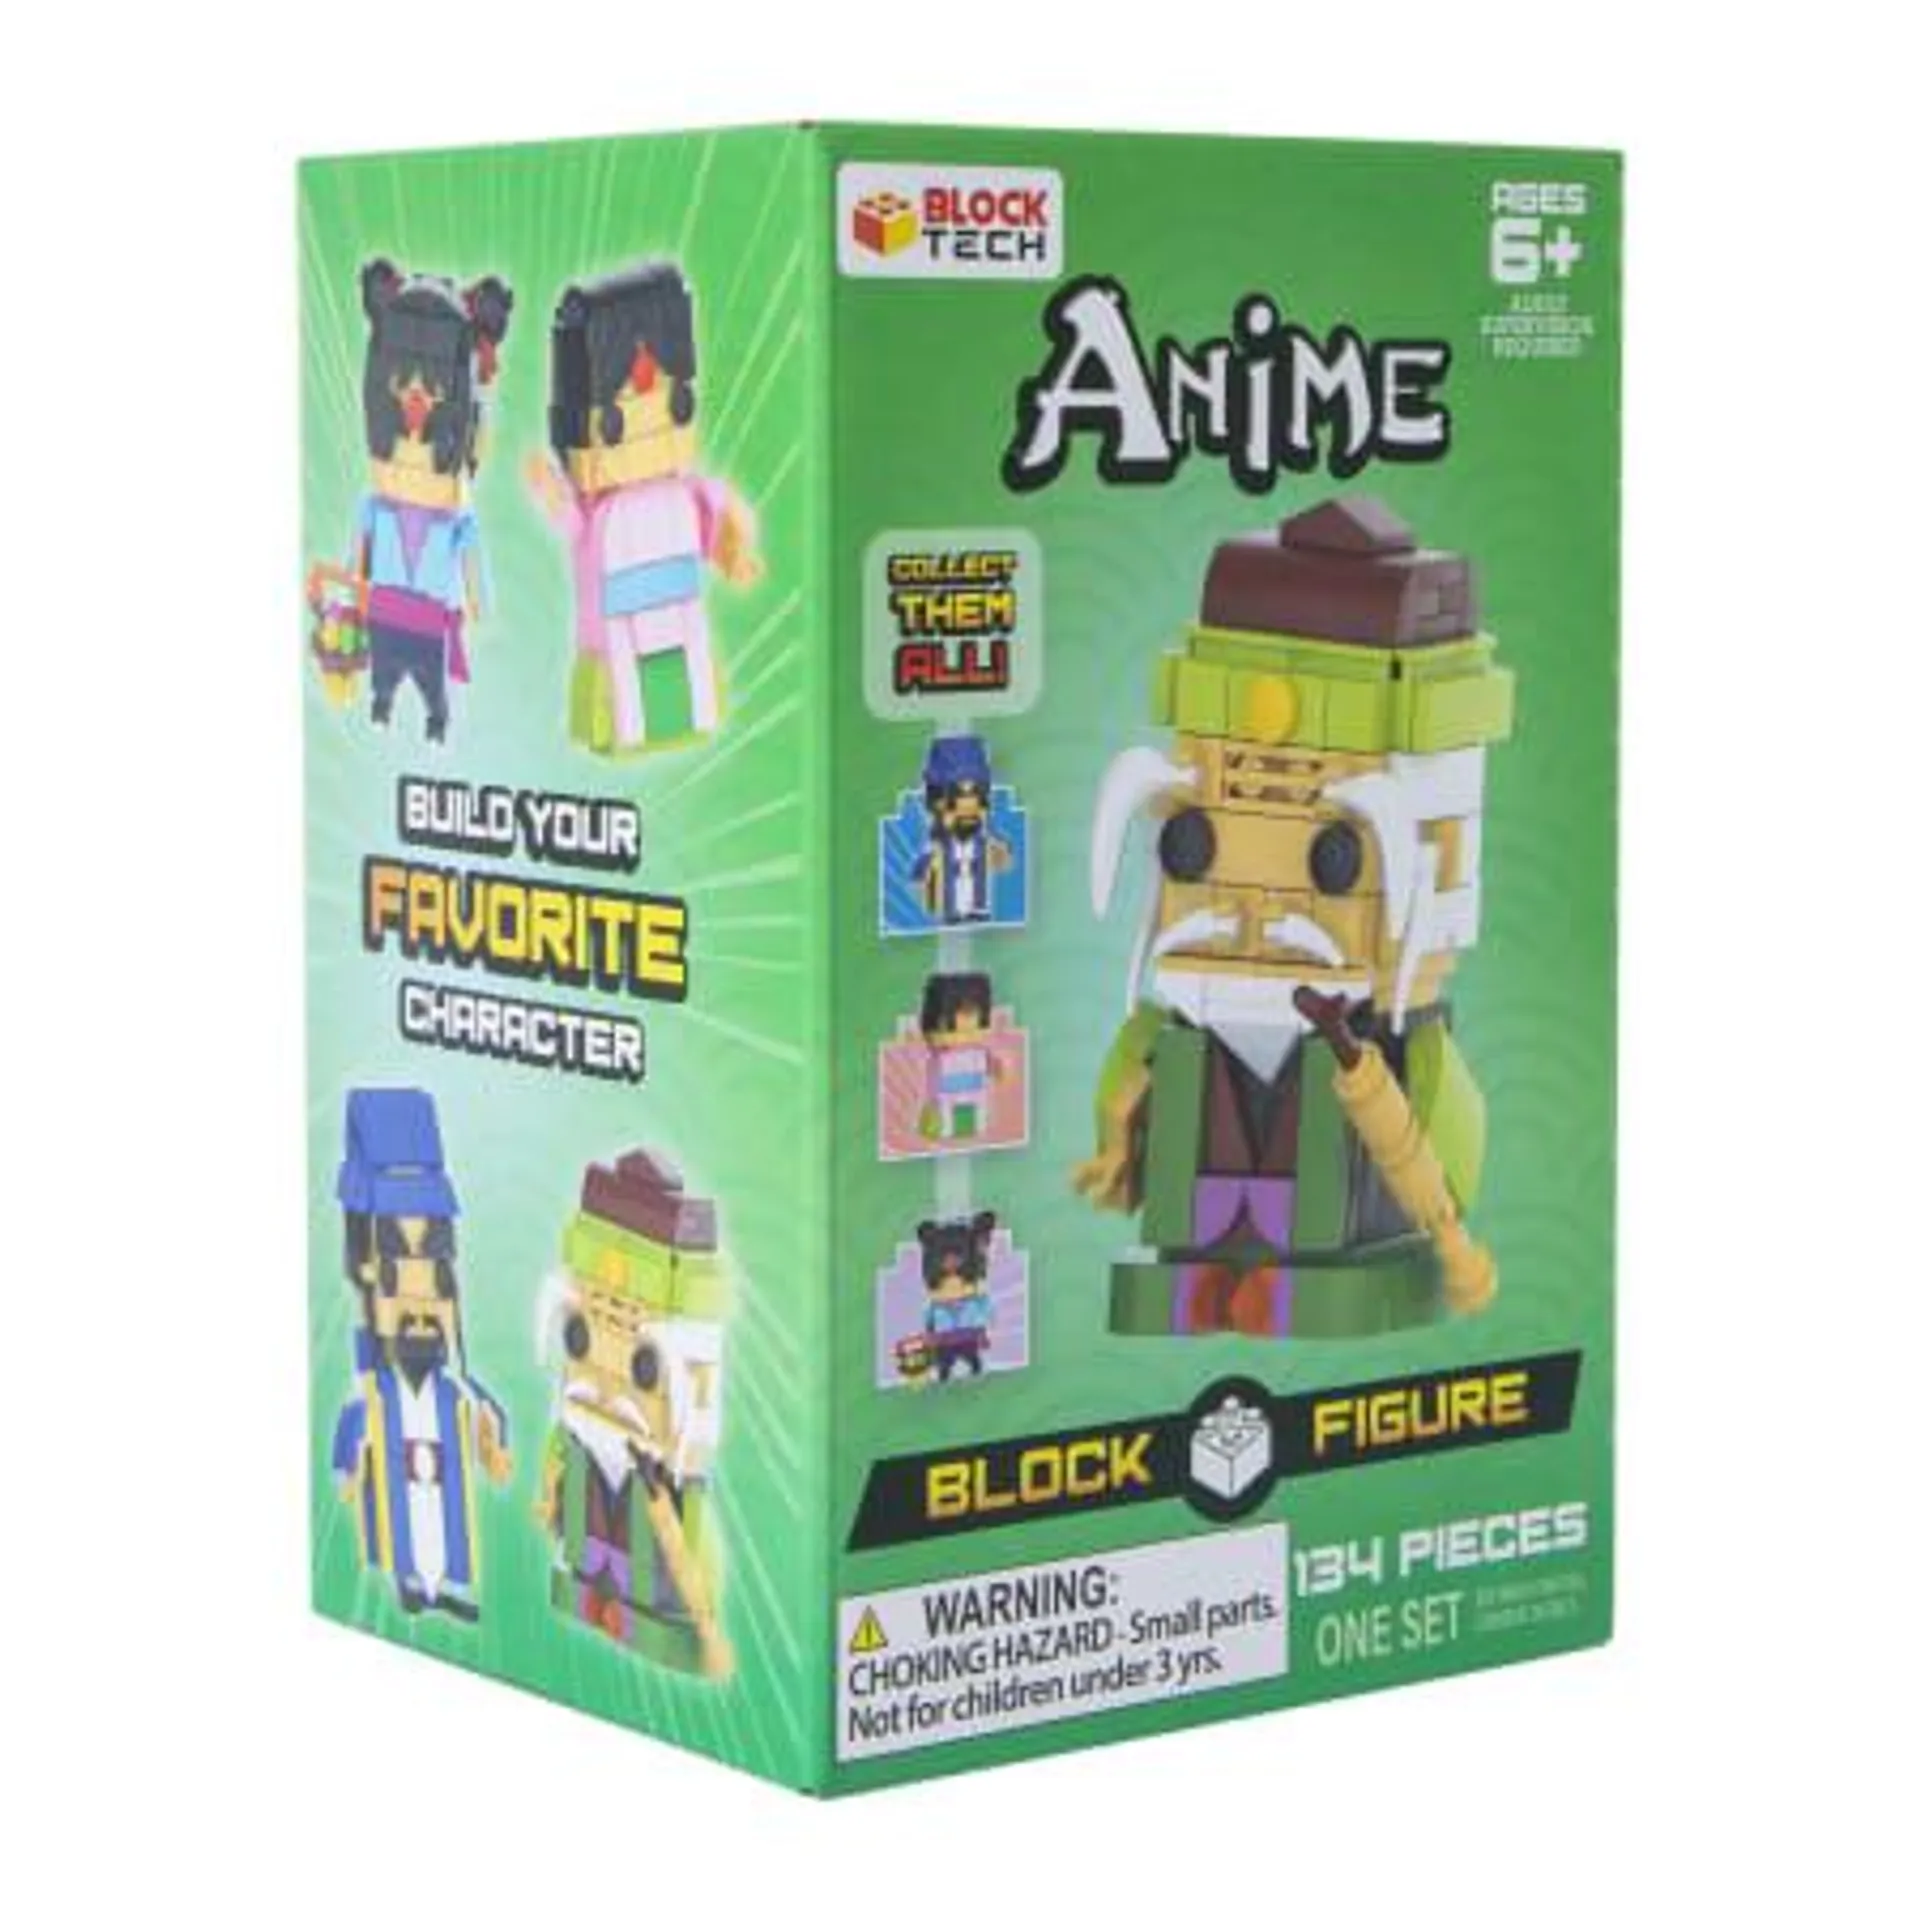 Anime Building Block Figure